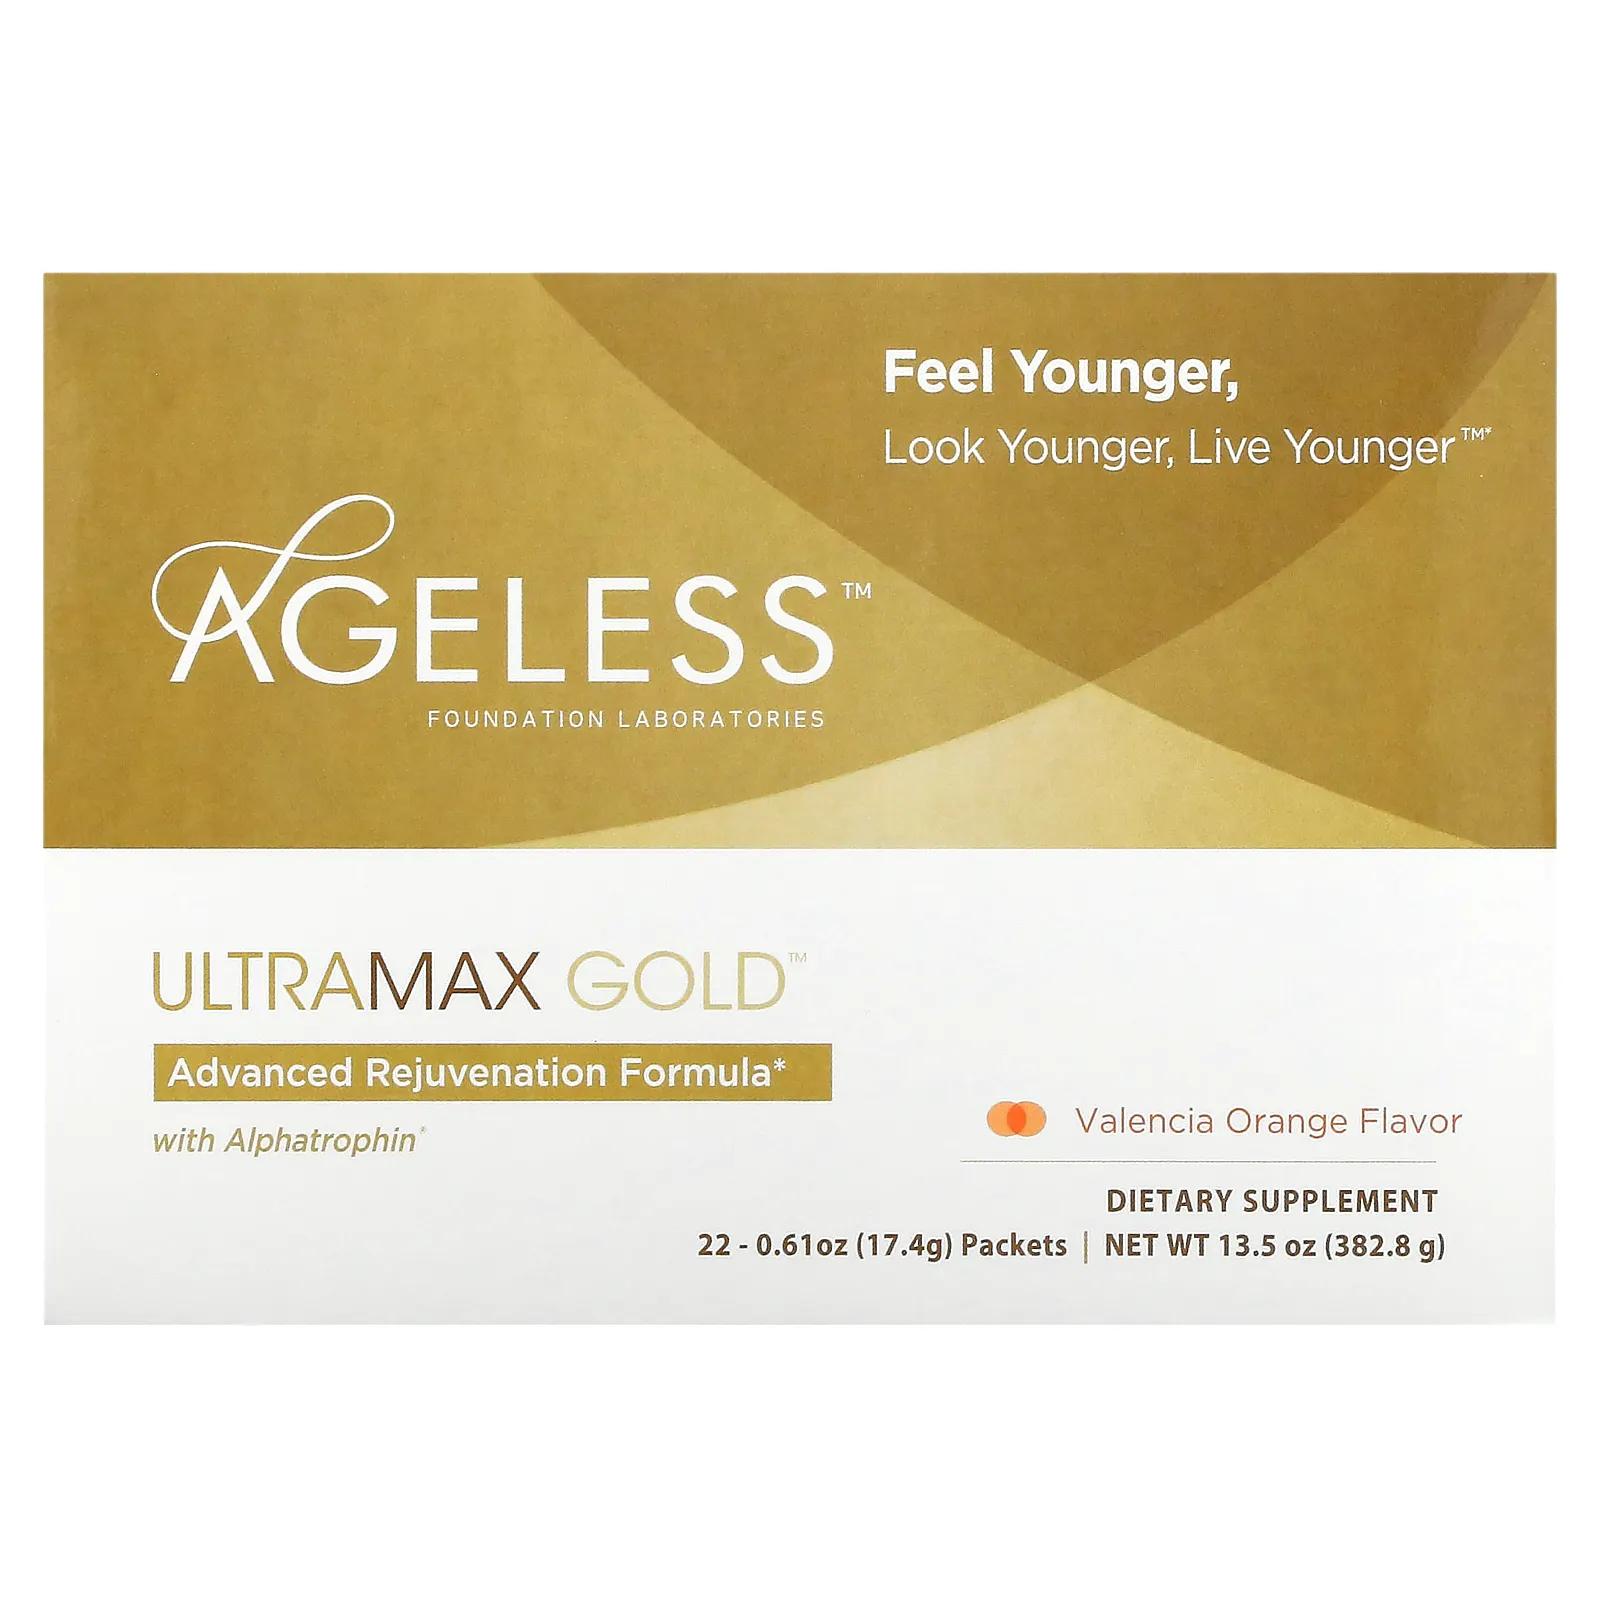 Ageless Foundation Laboratories UltraMax Gold улучшенная формула омоложения с альфатрофином со вкусом валенсийского апельсина 22 пакетика 13,5 унции (17,4 г) каждый фото